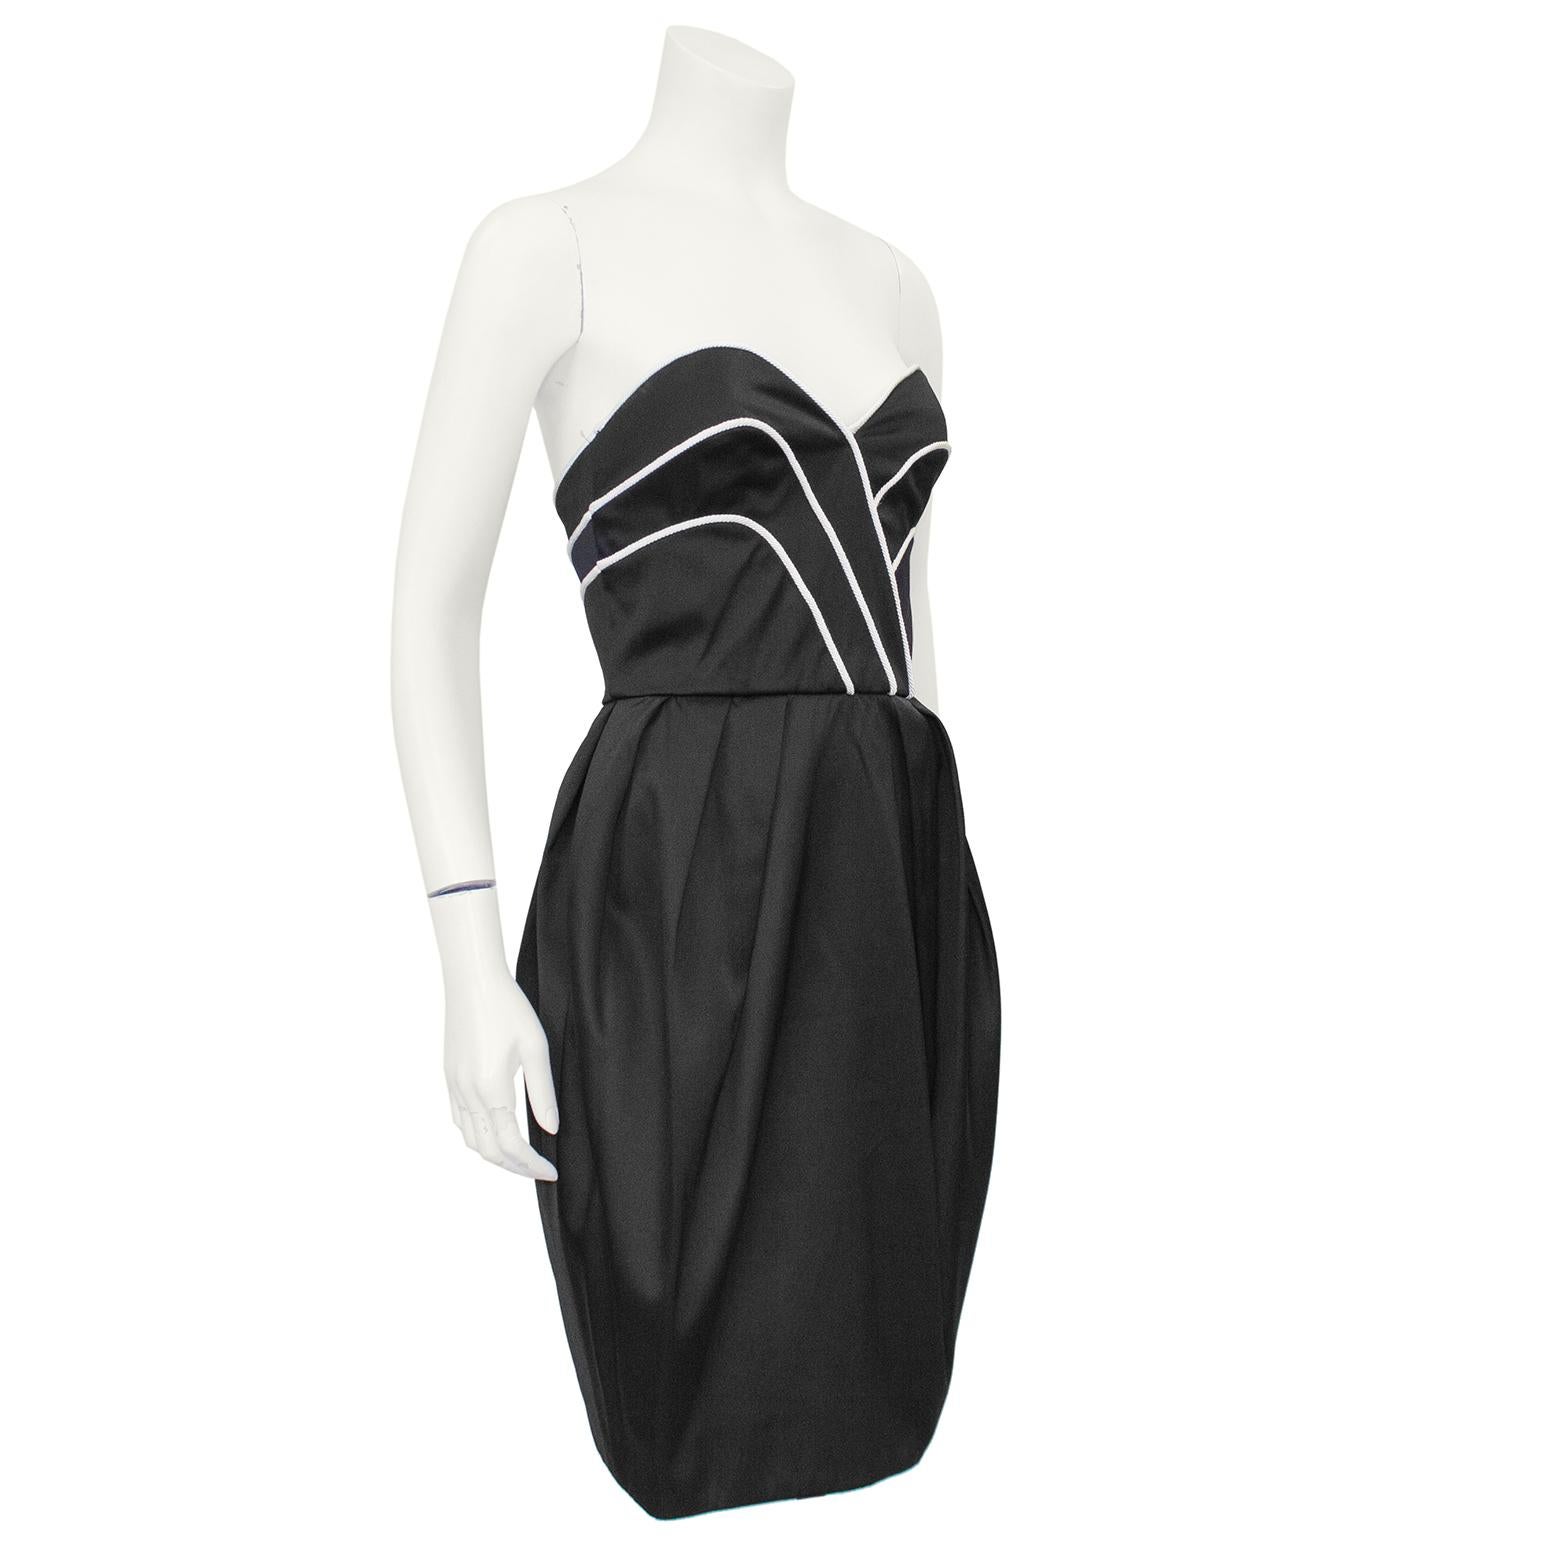 Intemporelle robe de cocktail Lanvin en satin noir à bretelles des années 1980. Le décolleté en cœur et le haut du corsage sont ornés d'une corde de couleur crème qui accentue la courbe naturelle du buste. La jupe de style bulle est obtenue par des